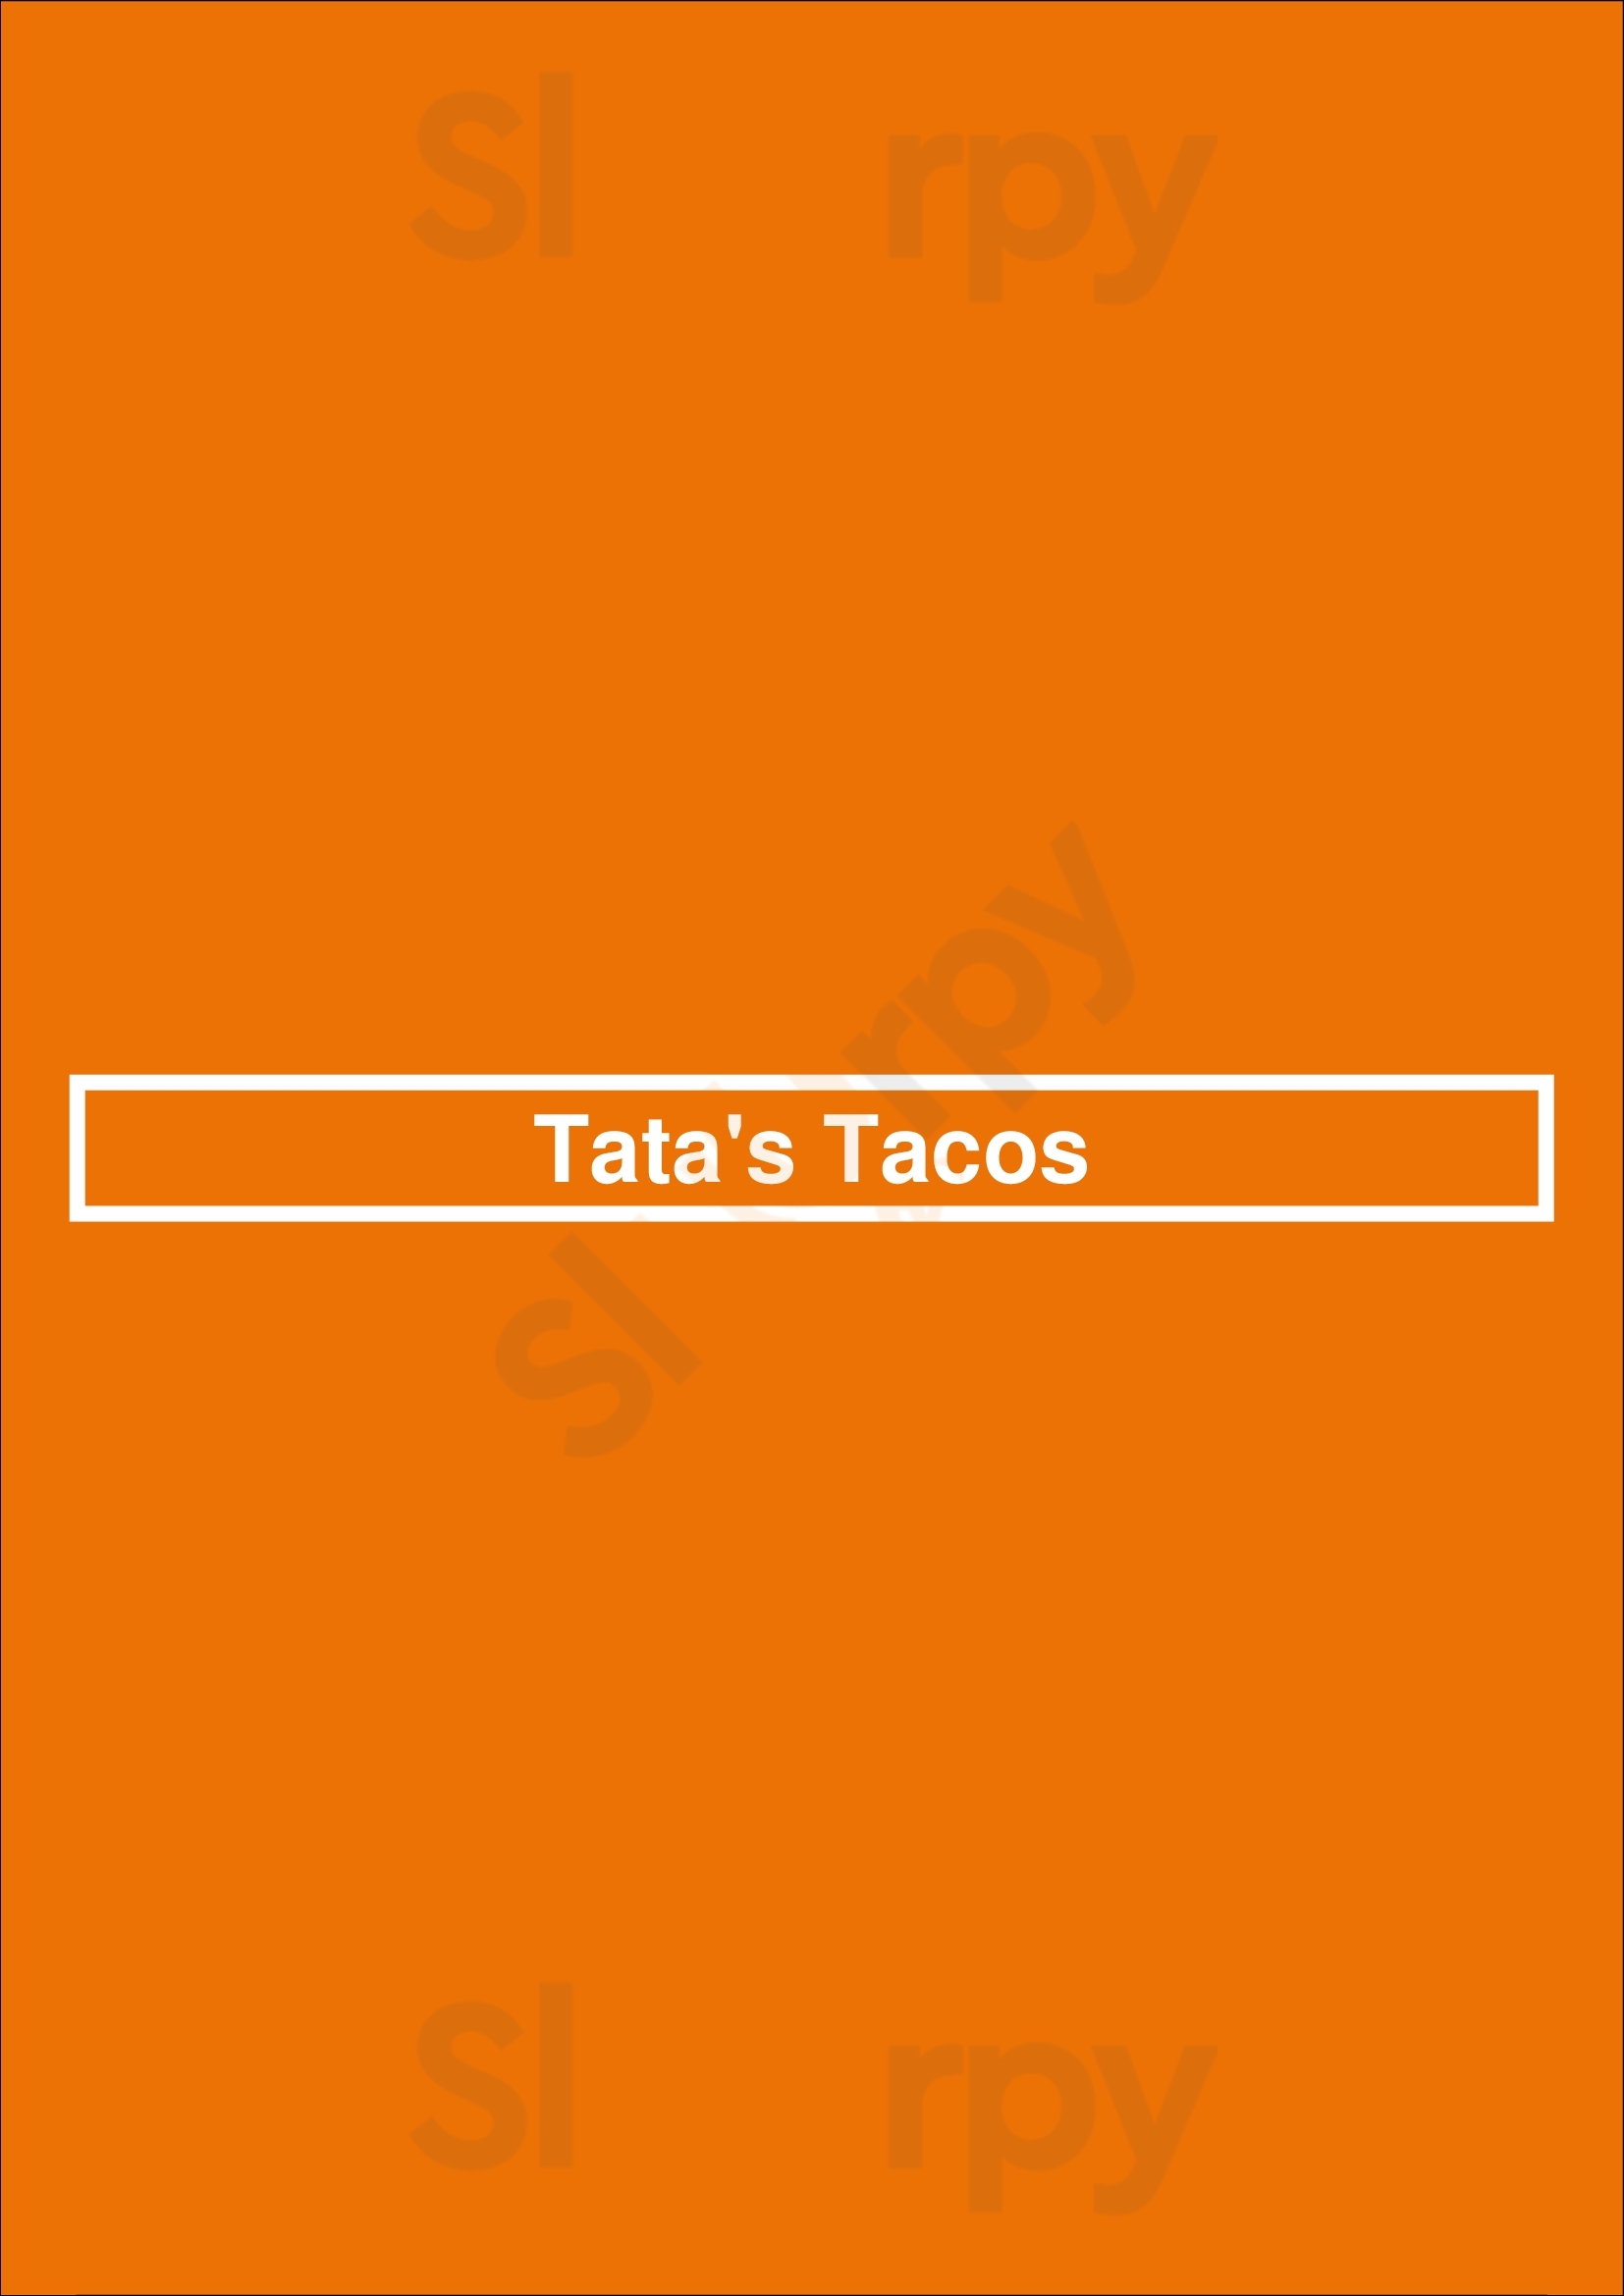 Tatas Tacos Chicago Menu - 1